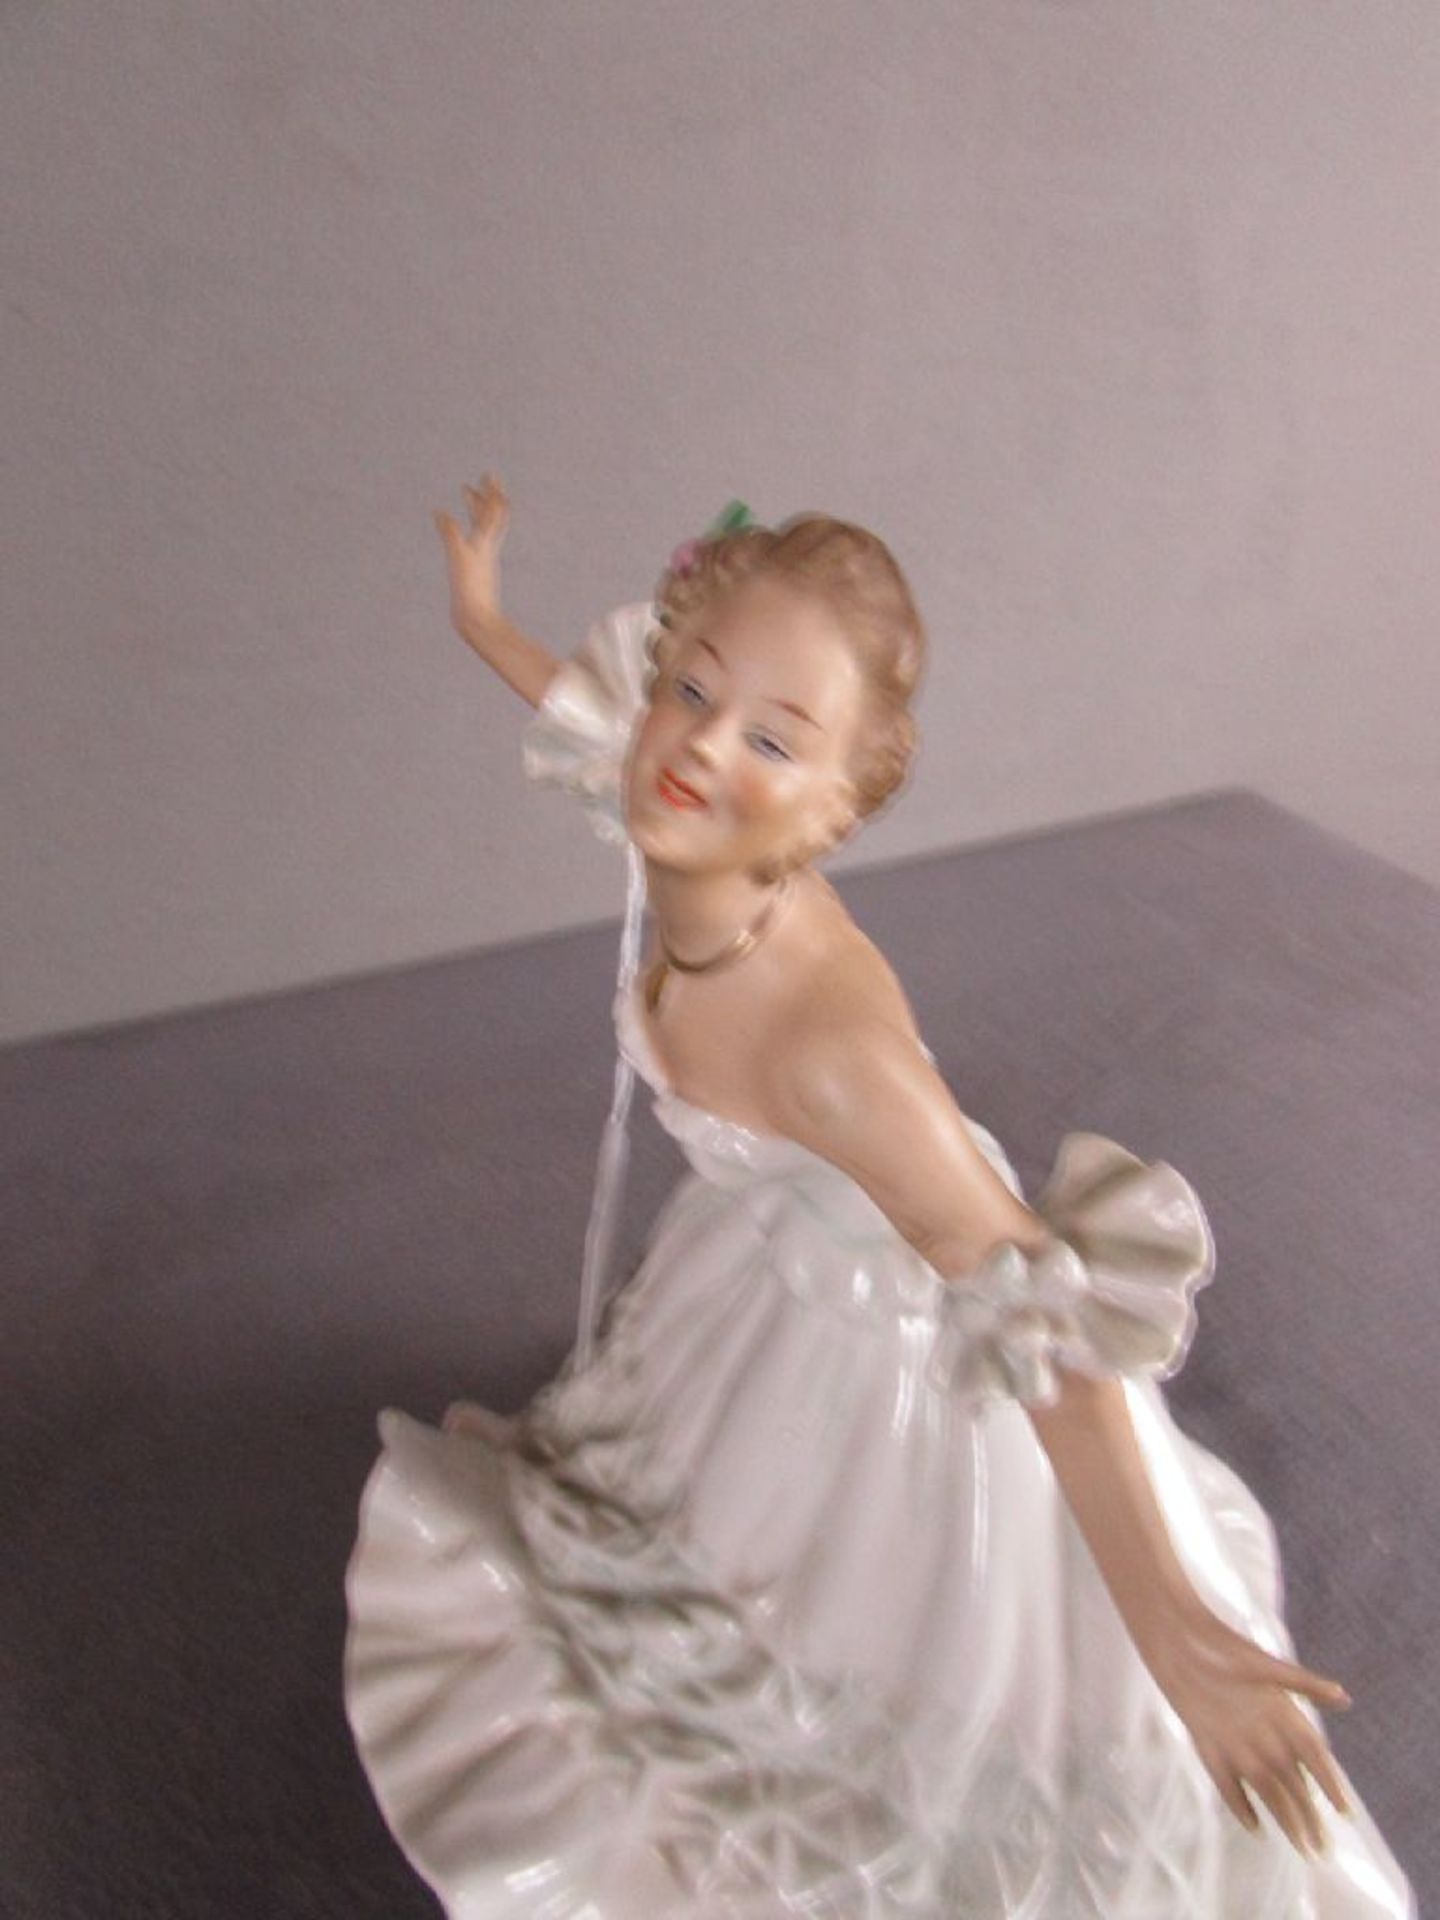 Porzellanfigur Tänzerin gemarkt ein Finger bestoßen 28cm hoch - Image 3 of 4